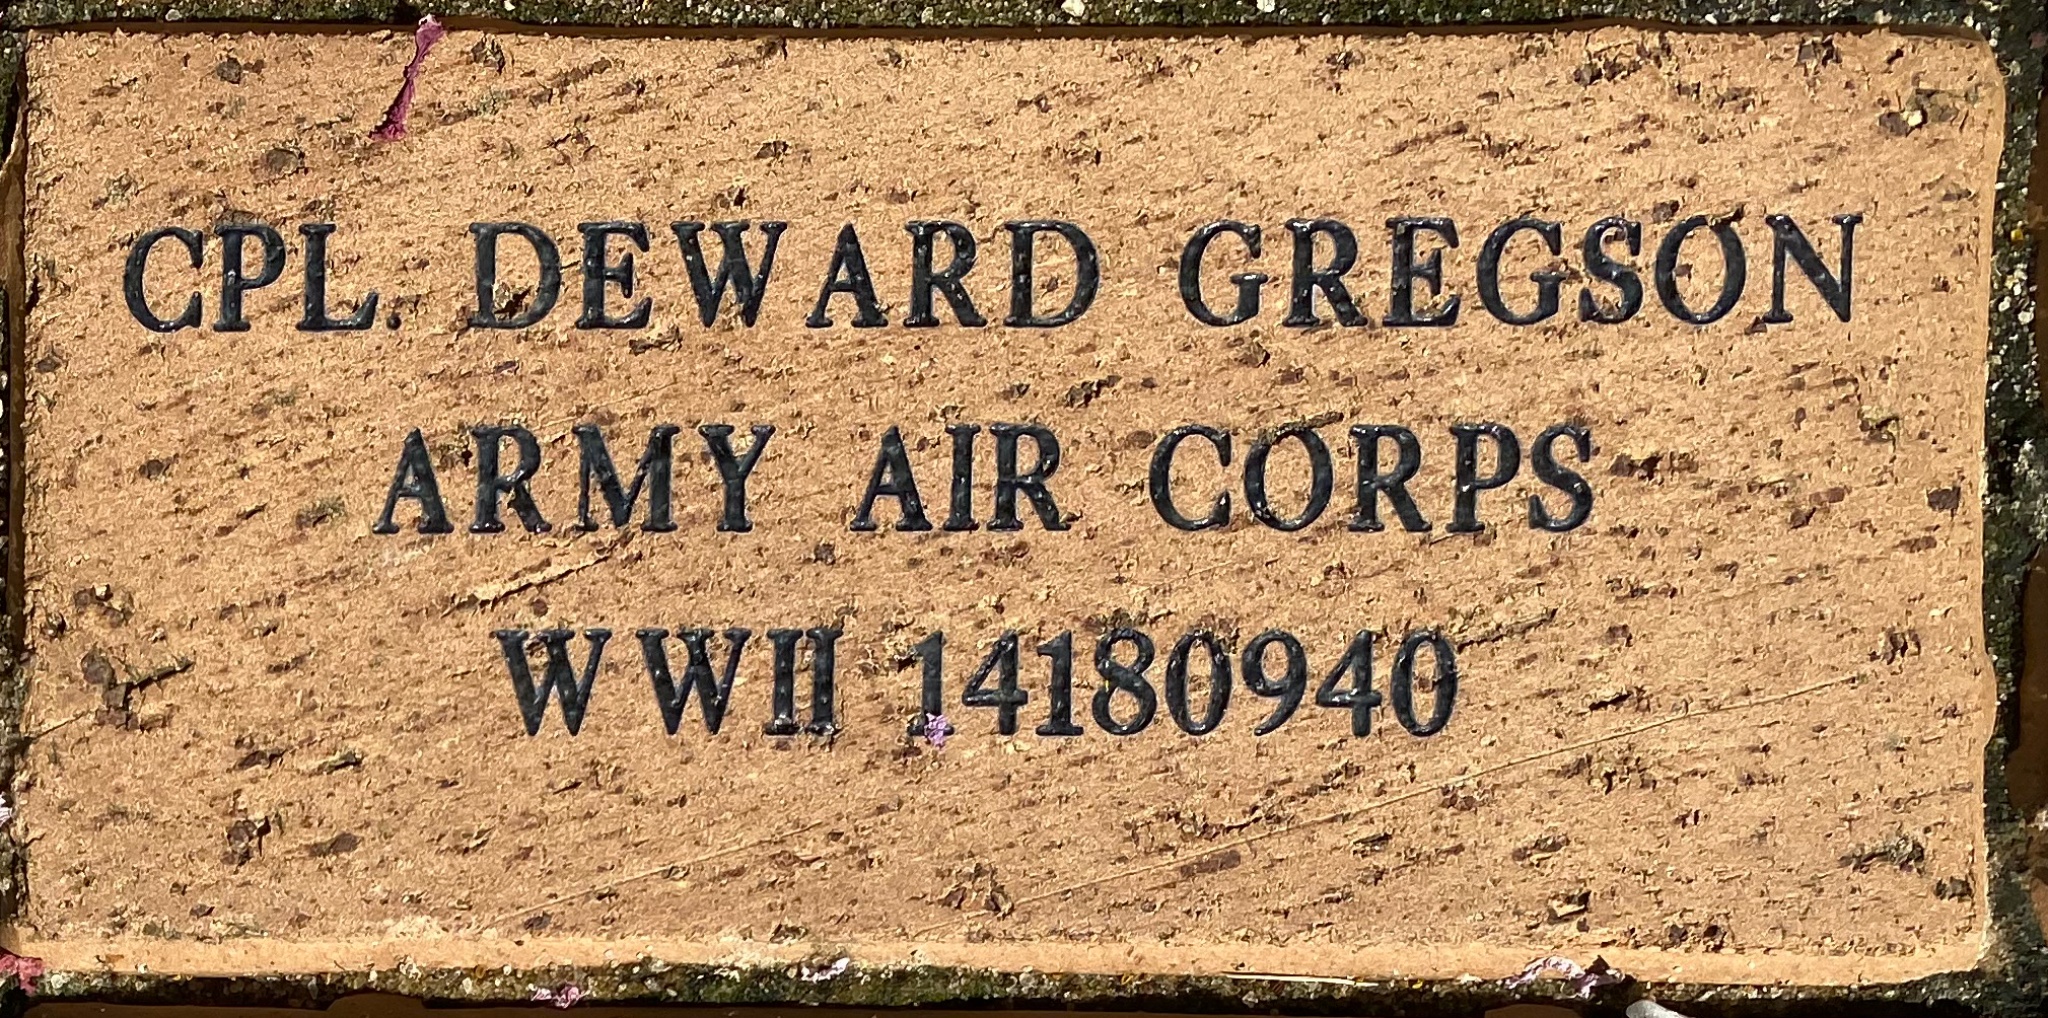 CPL DEWARD GREGSON ARMY AIR CORPS WWII 14180940